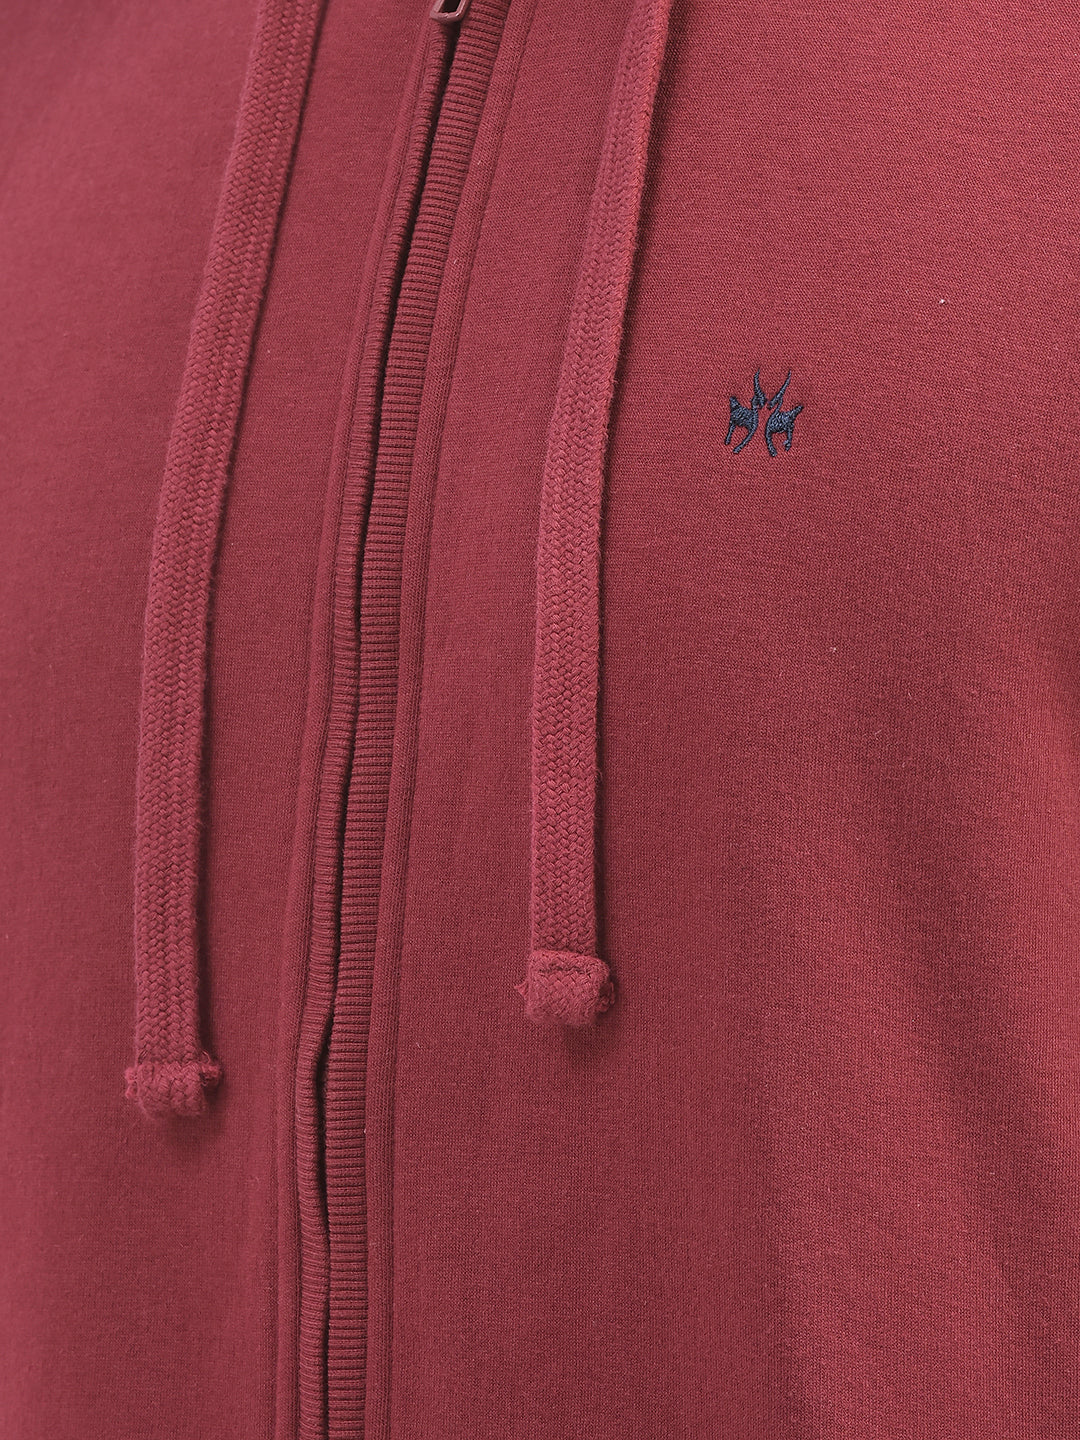 Maroon Front Open Hooded Sweatshirt-Men Sweatshirts-Crimsoune Club